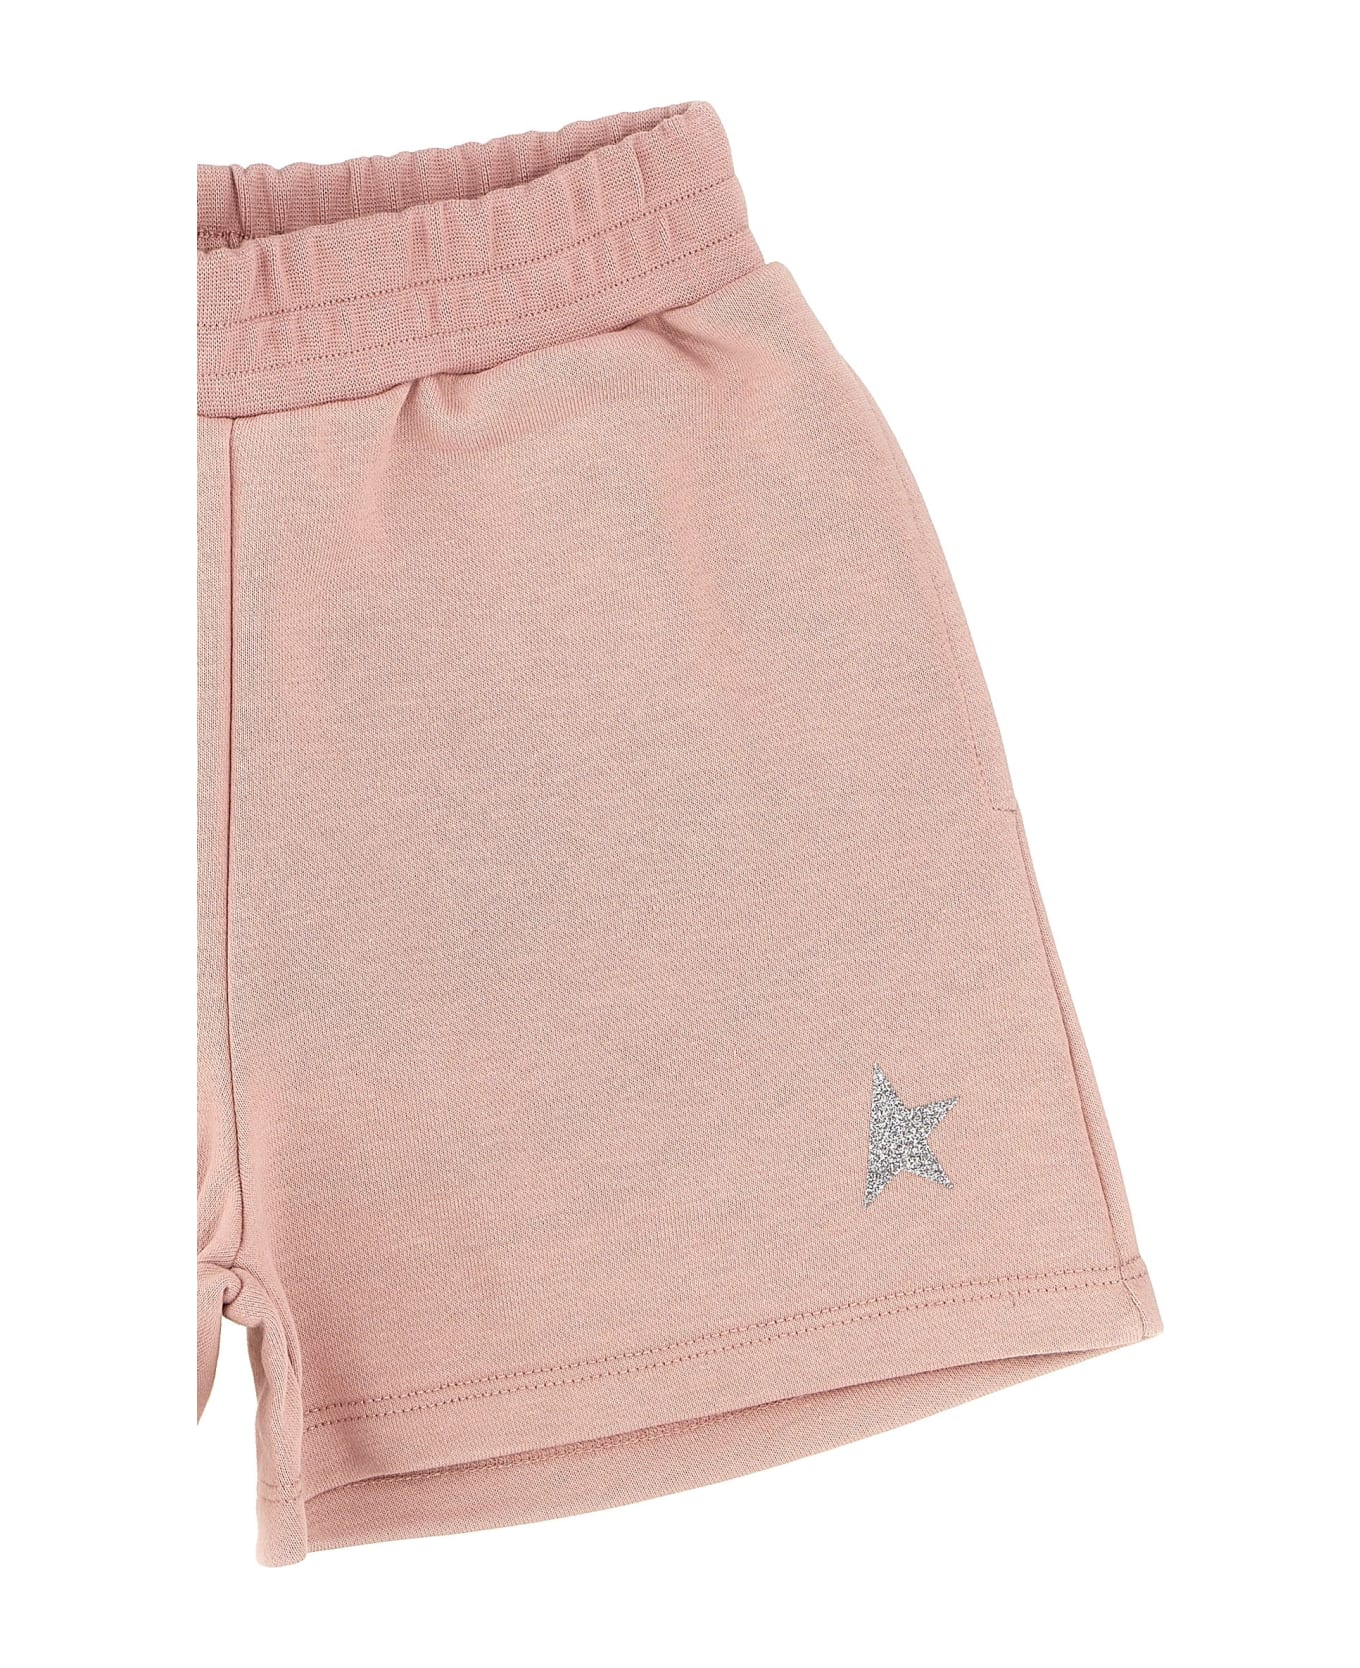 Golden Goose 'star' Bermuda Shorts - Pink ボトムス